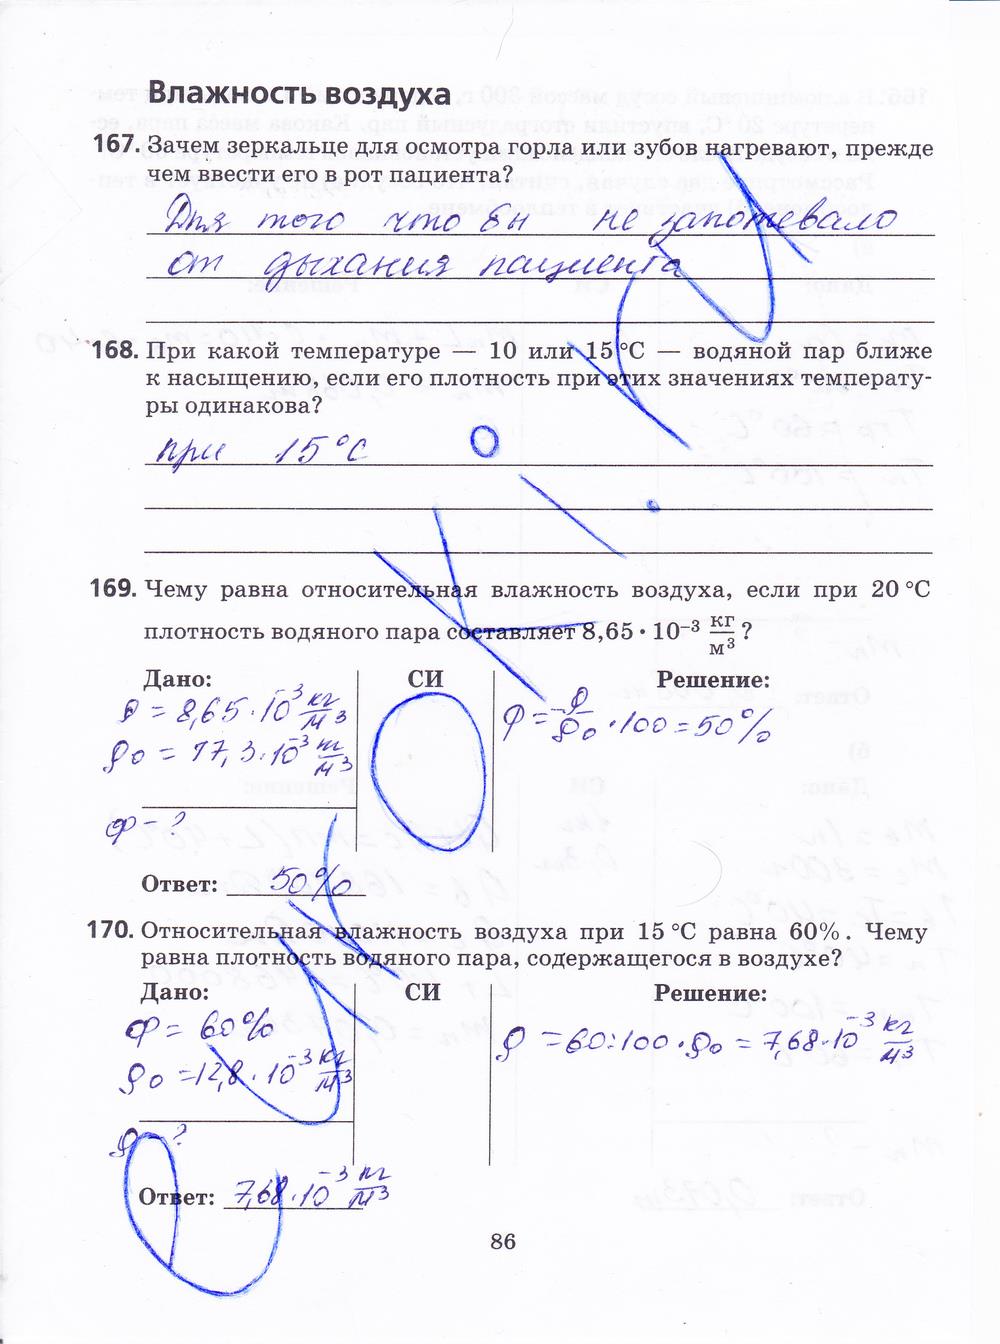 гдз 8 класс рабочая тетрадь страница 86 физика Пурышева, Важеевская